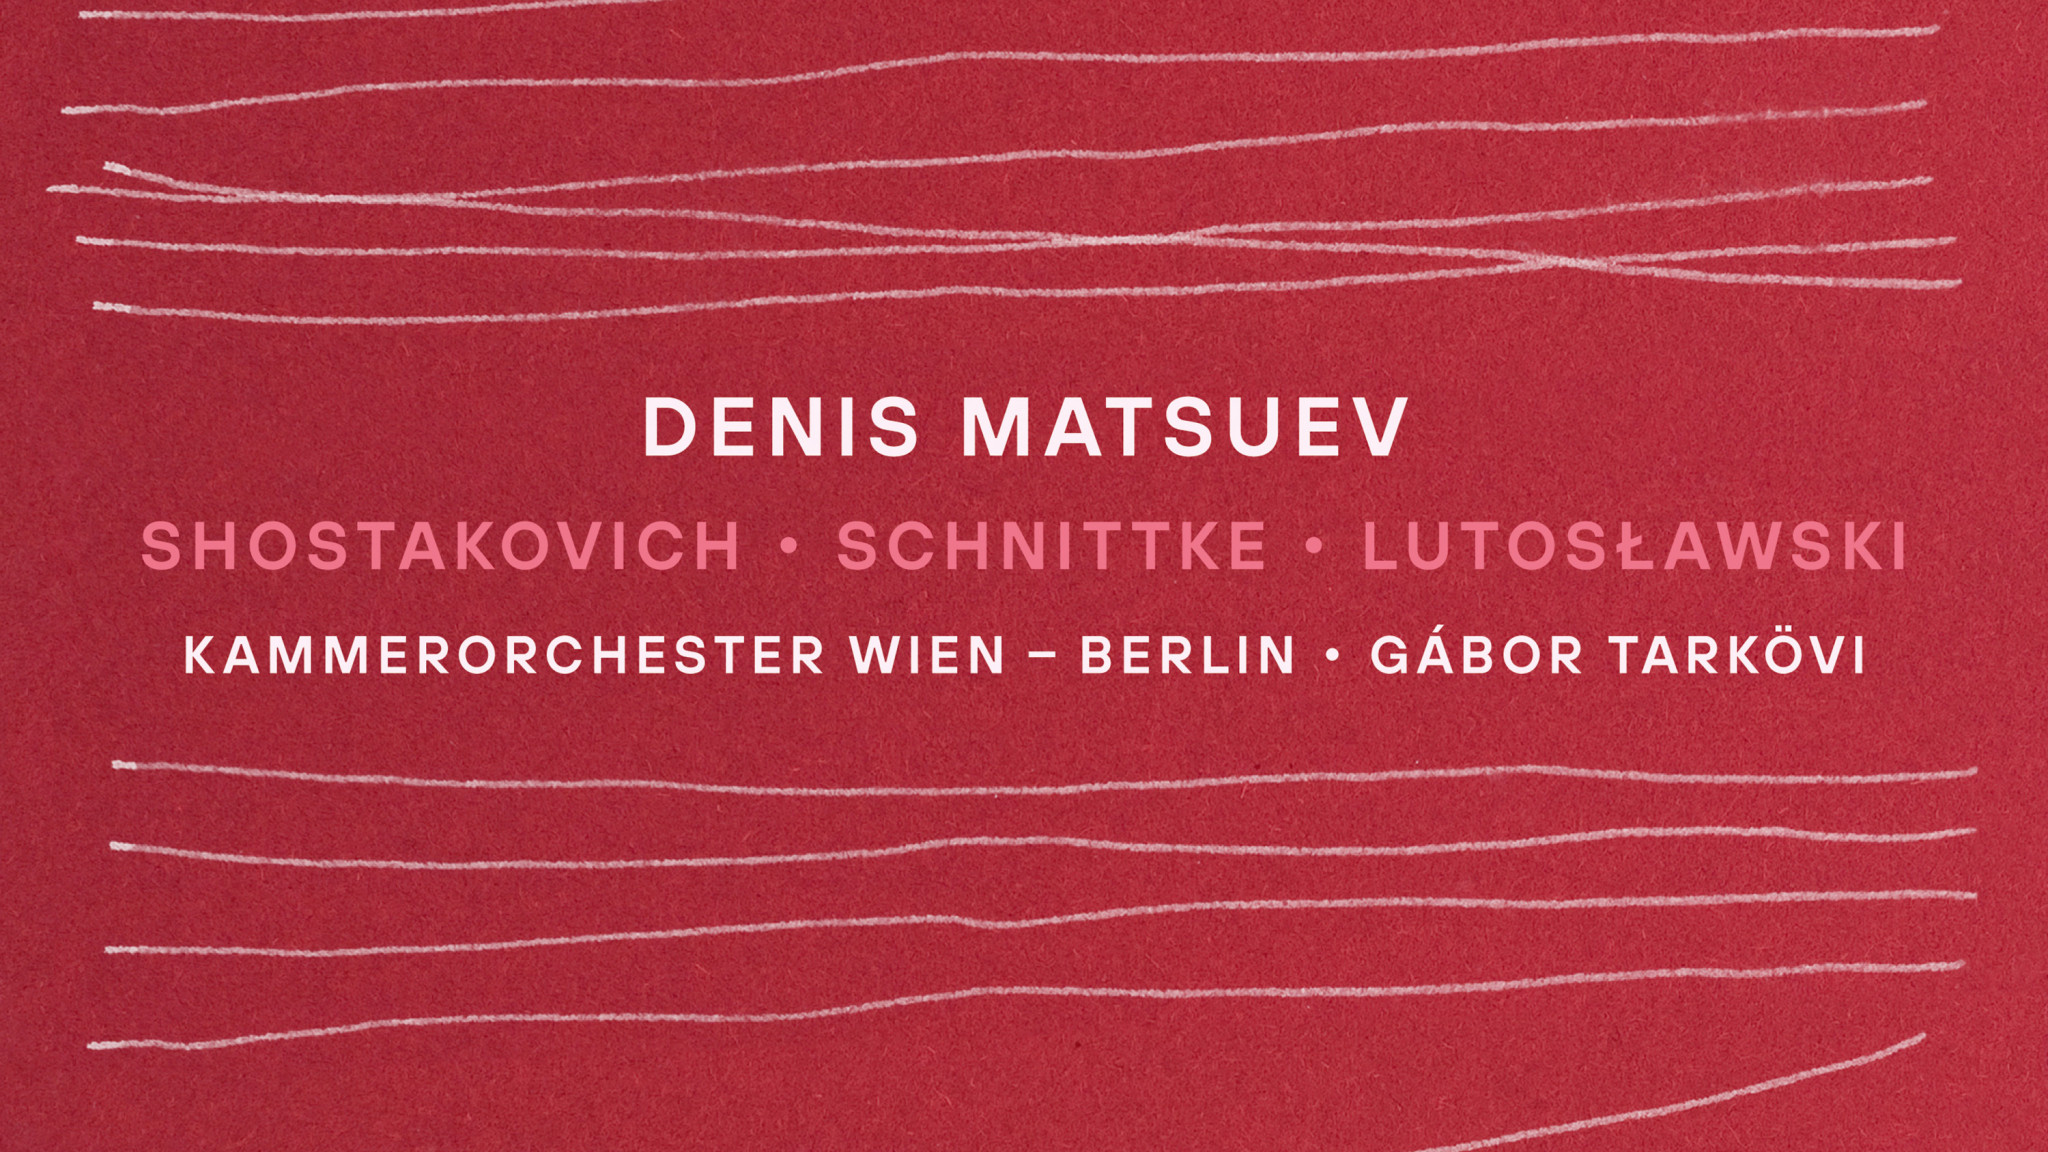 Denis Matsuev - Shostakovich, Schnittke, Lutosławski - Kammerorchester Wien - Berlin